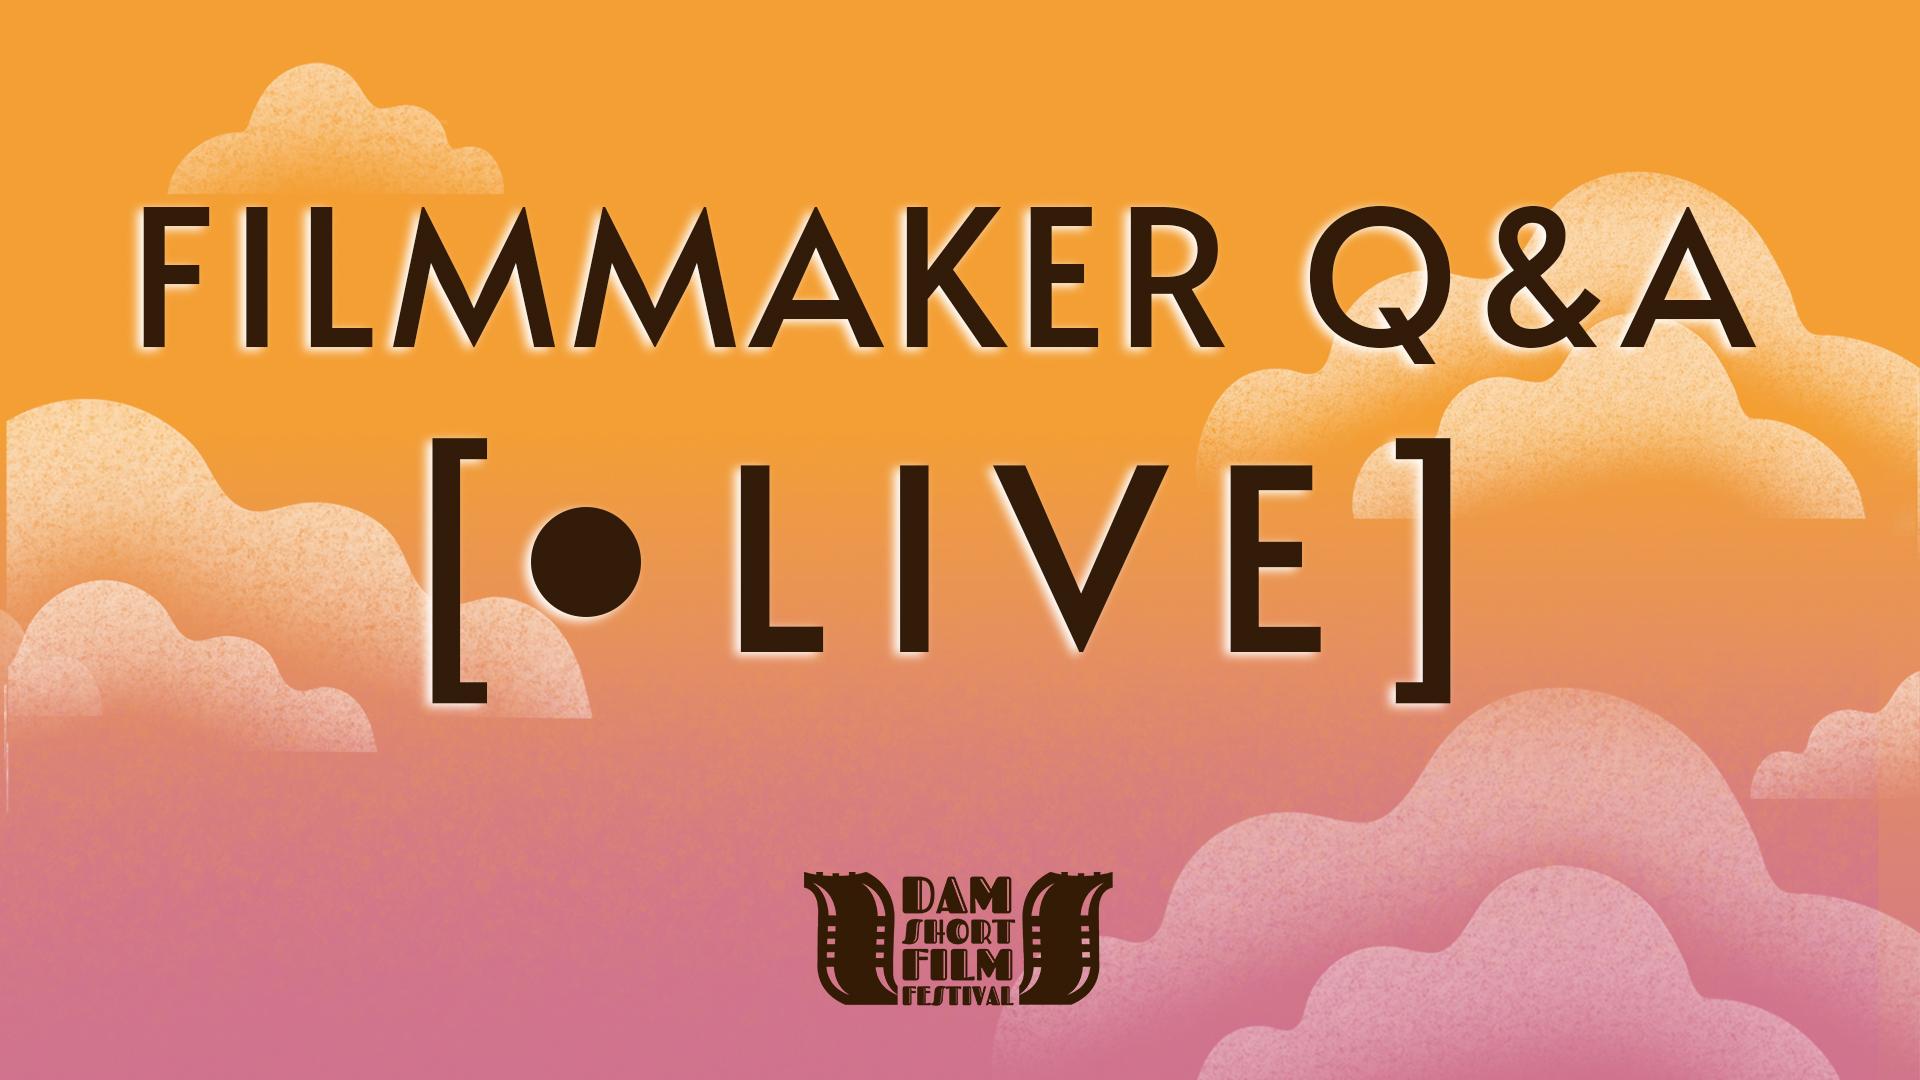 FILMMAKER Q&A --------  Documentary A: Written Word / Spoken Word